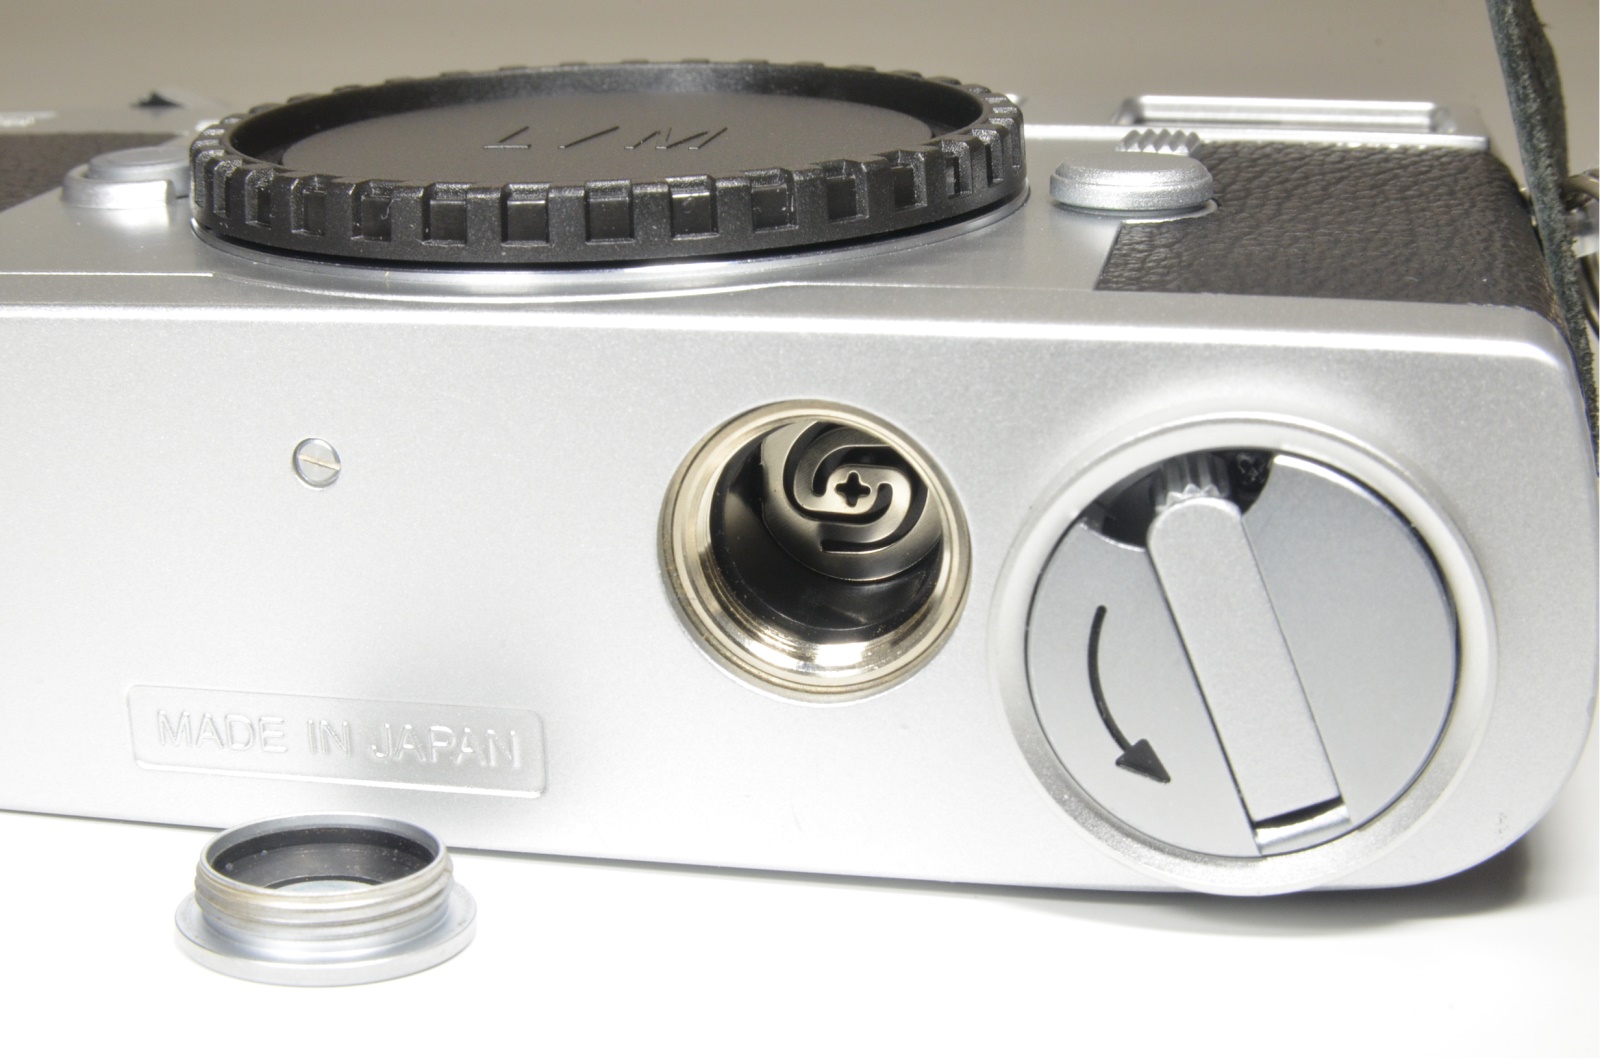 zeiss ikon zm m-mount rangefinder 35mm film camera silver film tested